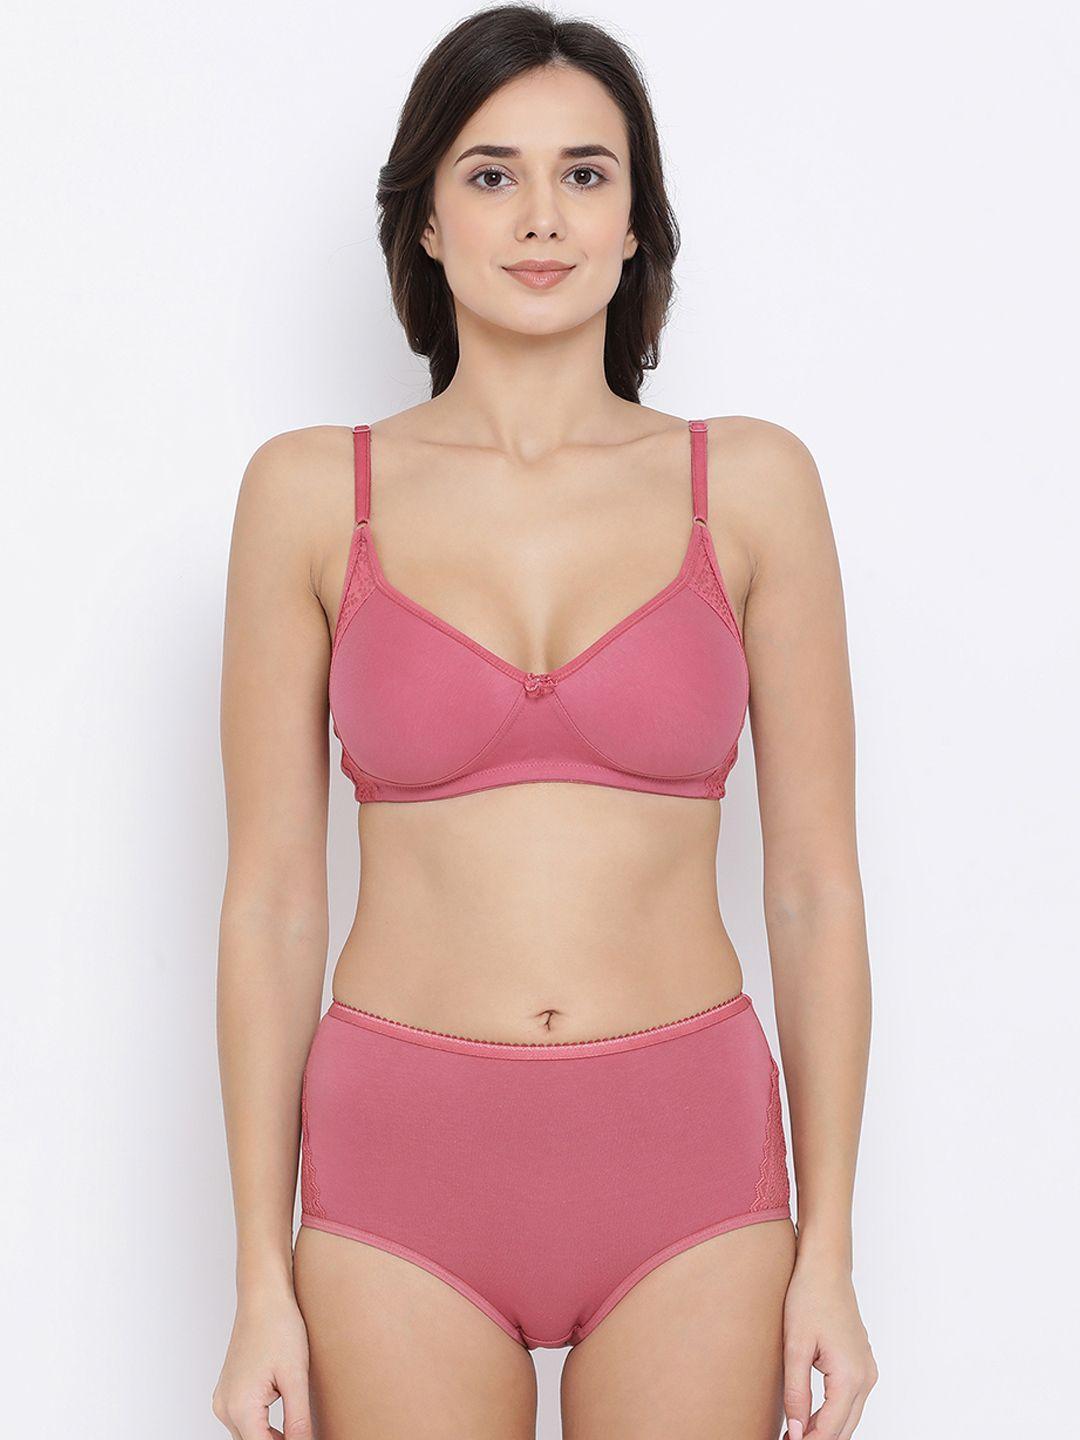 clovia-women-pink-solid-lingerie-set-combp1032